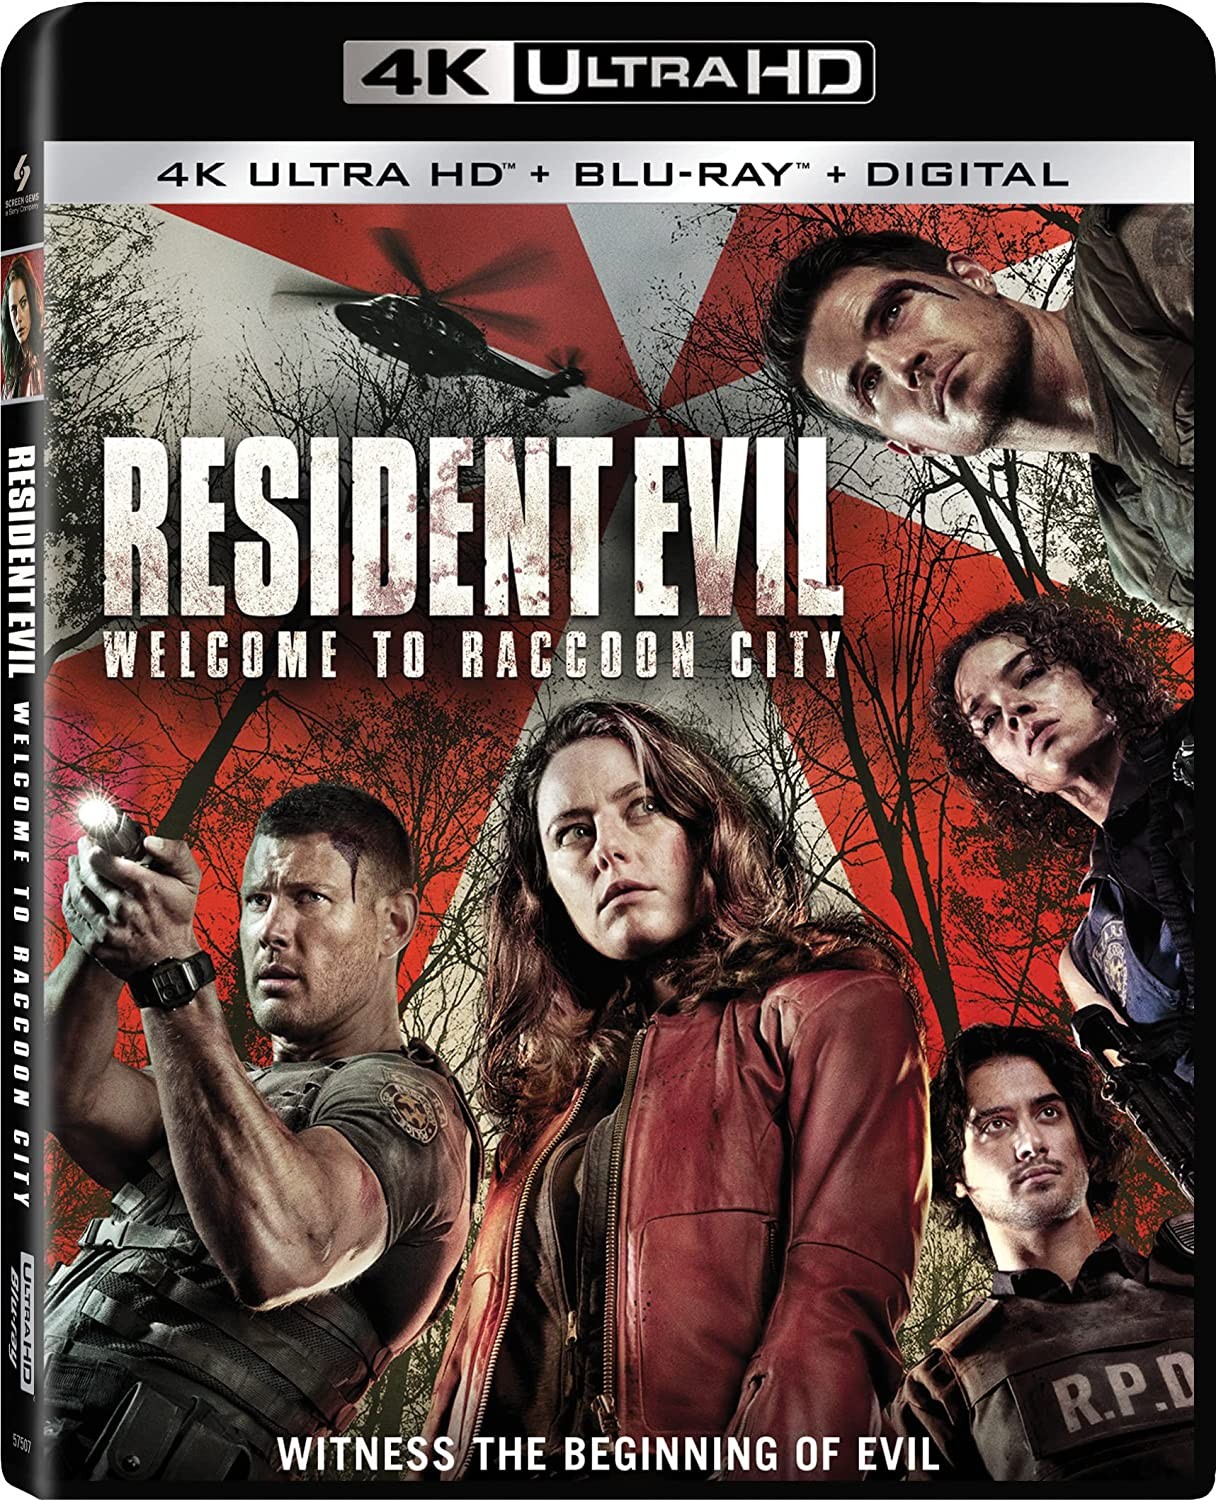 Resident Evil: Witajcie w Raccoon City wydanie 4K UHD